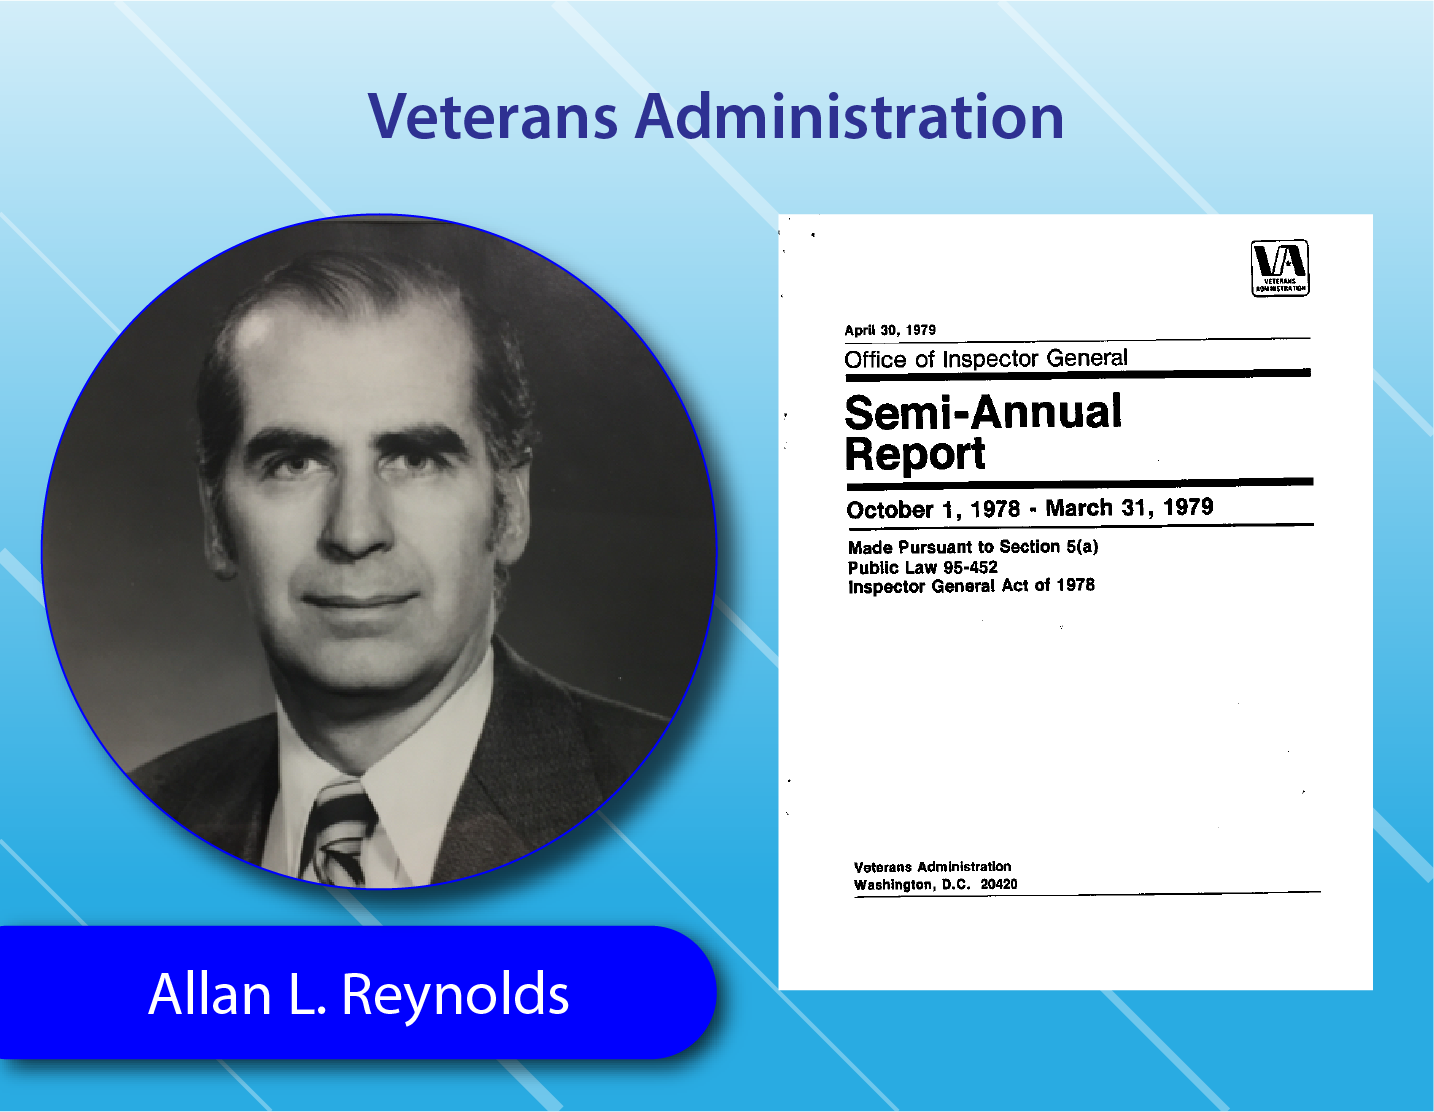 Veteran Administration - Allan L. Reynolds